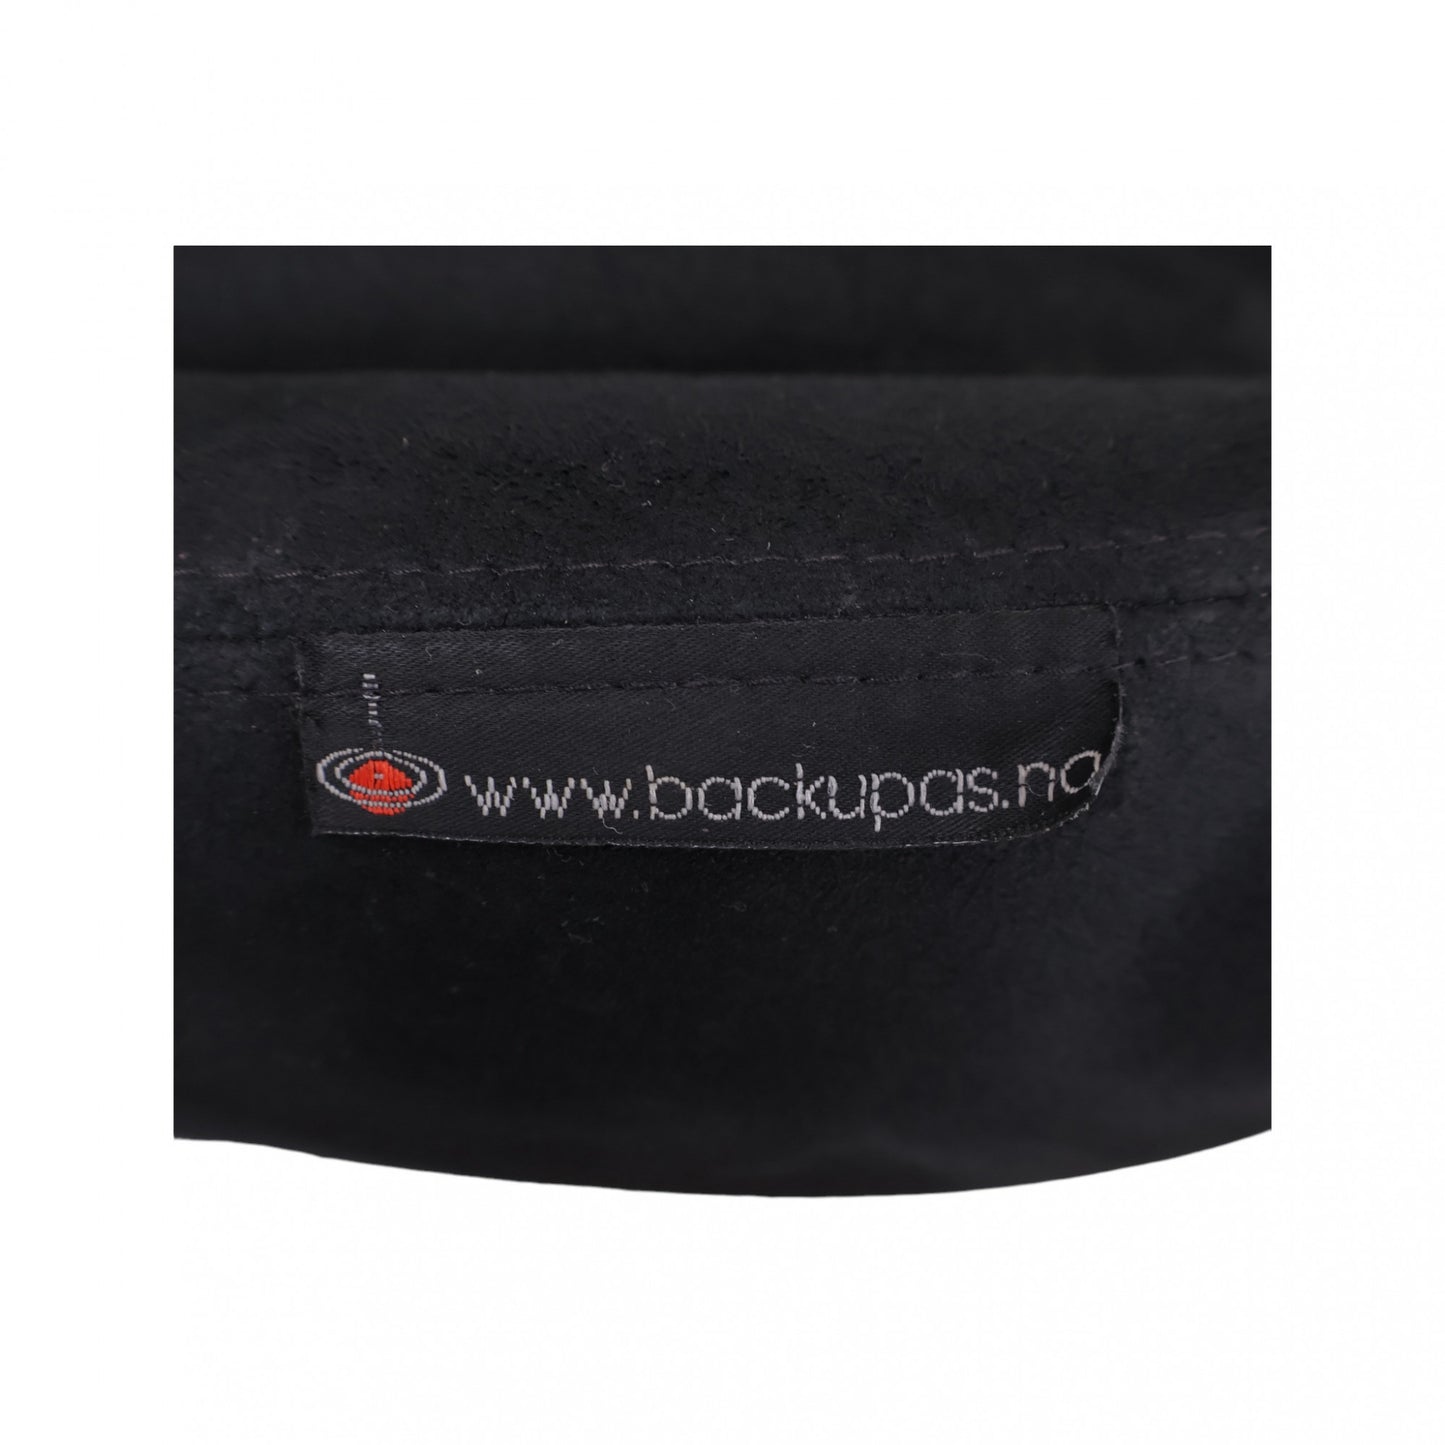 Nyrenset | Backapp 2.0 Balansestol med Sadelsete